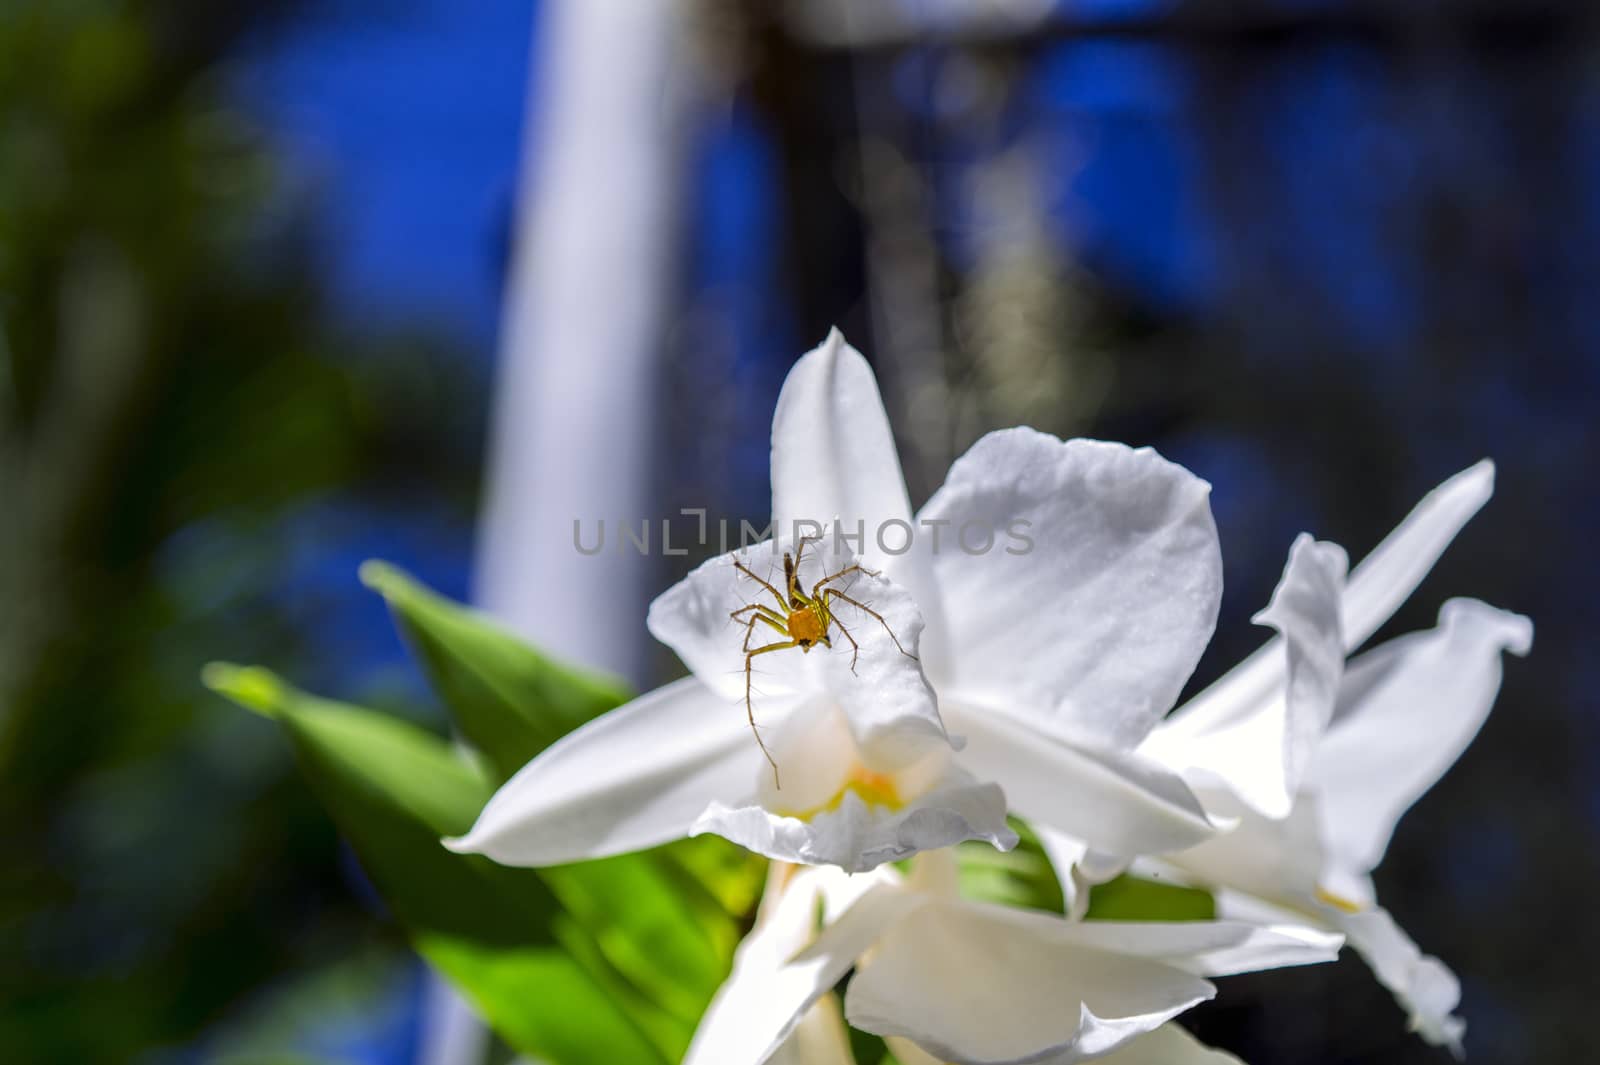 Spider on Orchid Flower in the Garden, Pattaya. 